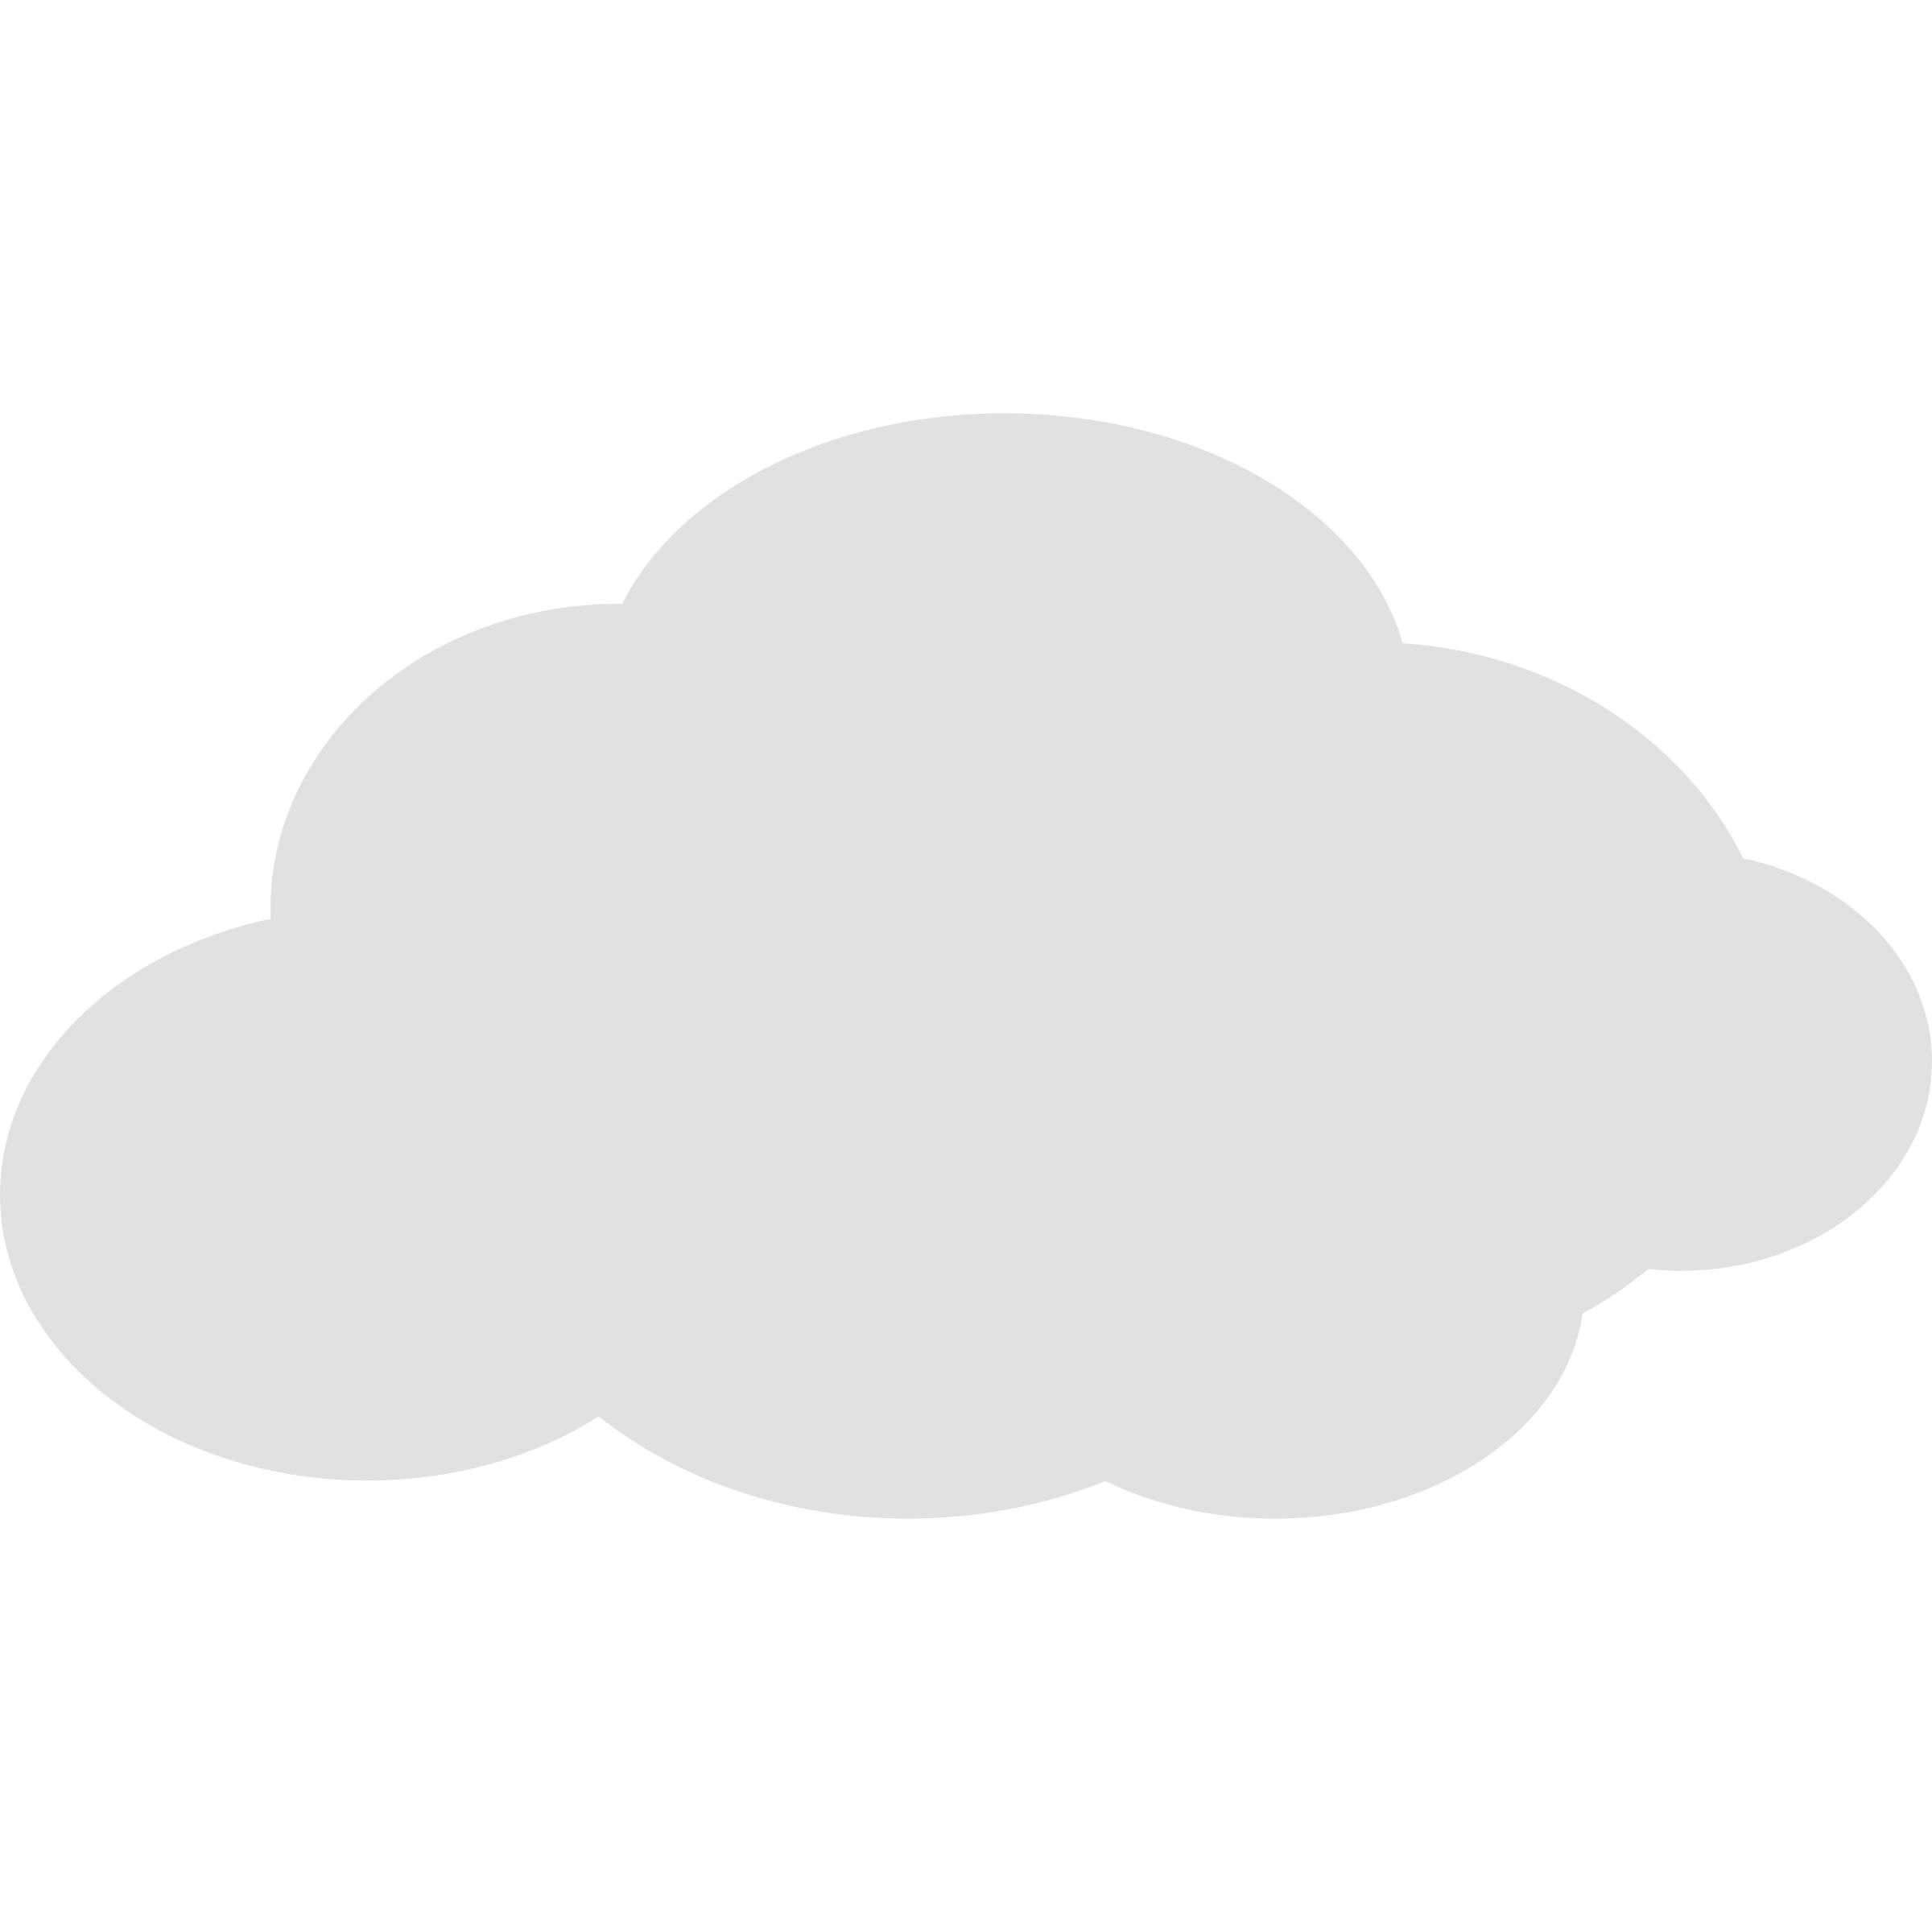 Cloud clipart simple cloud icon